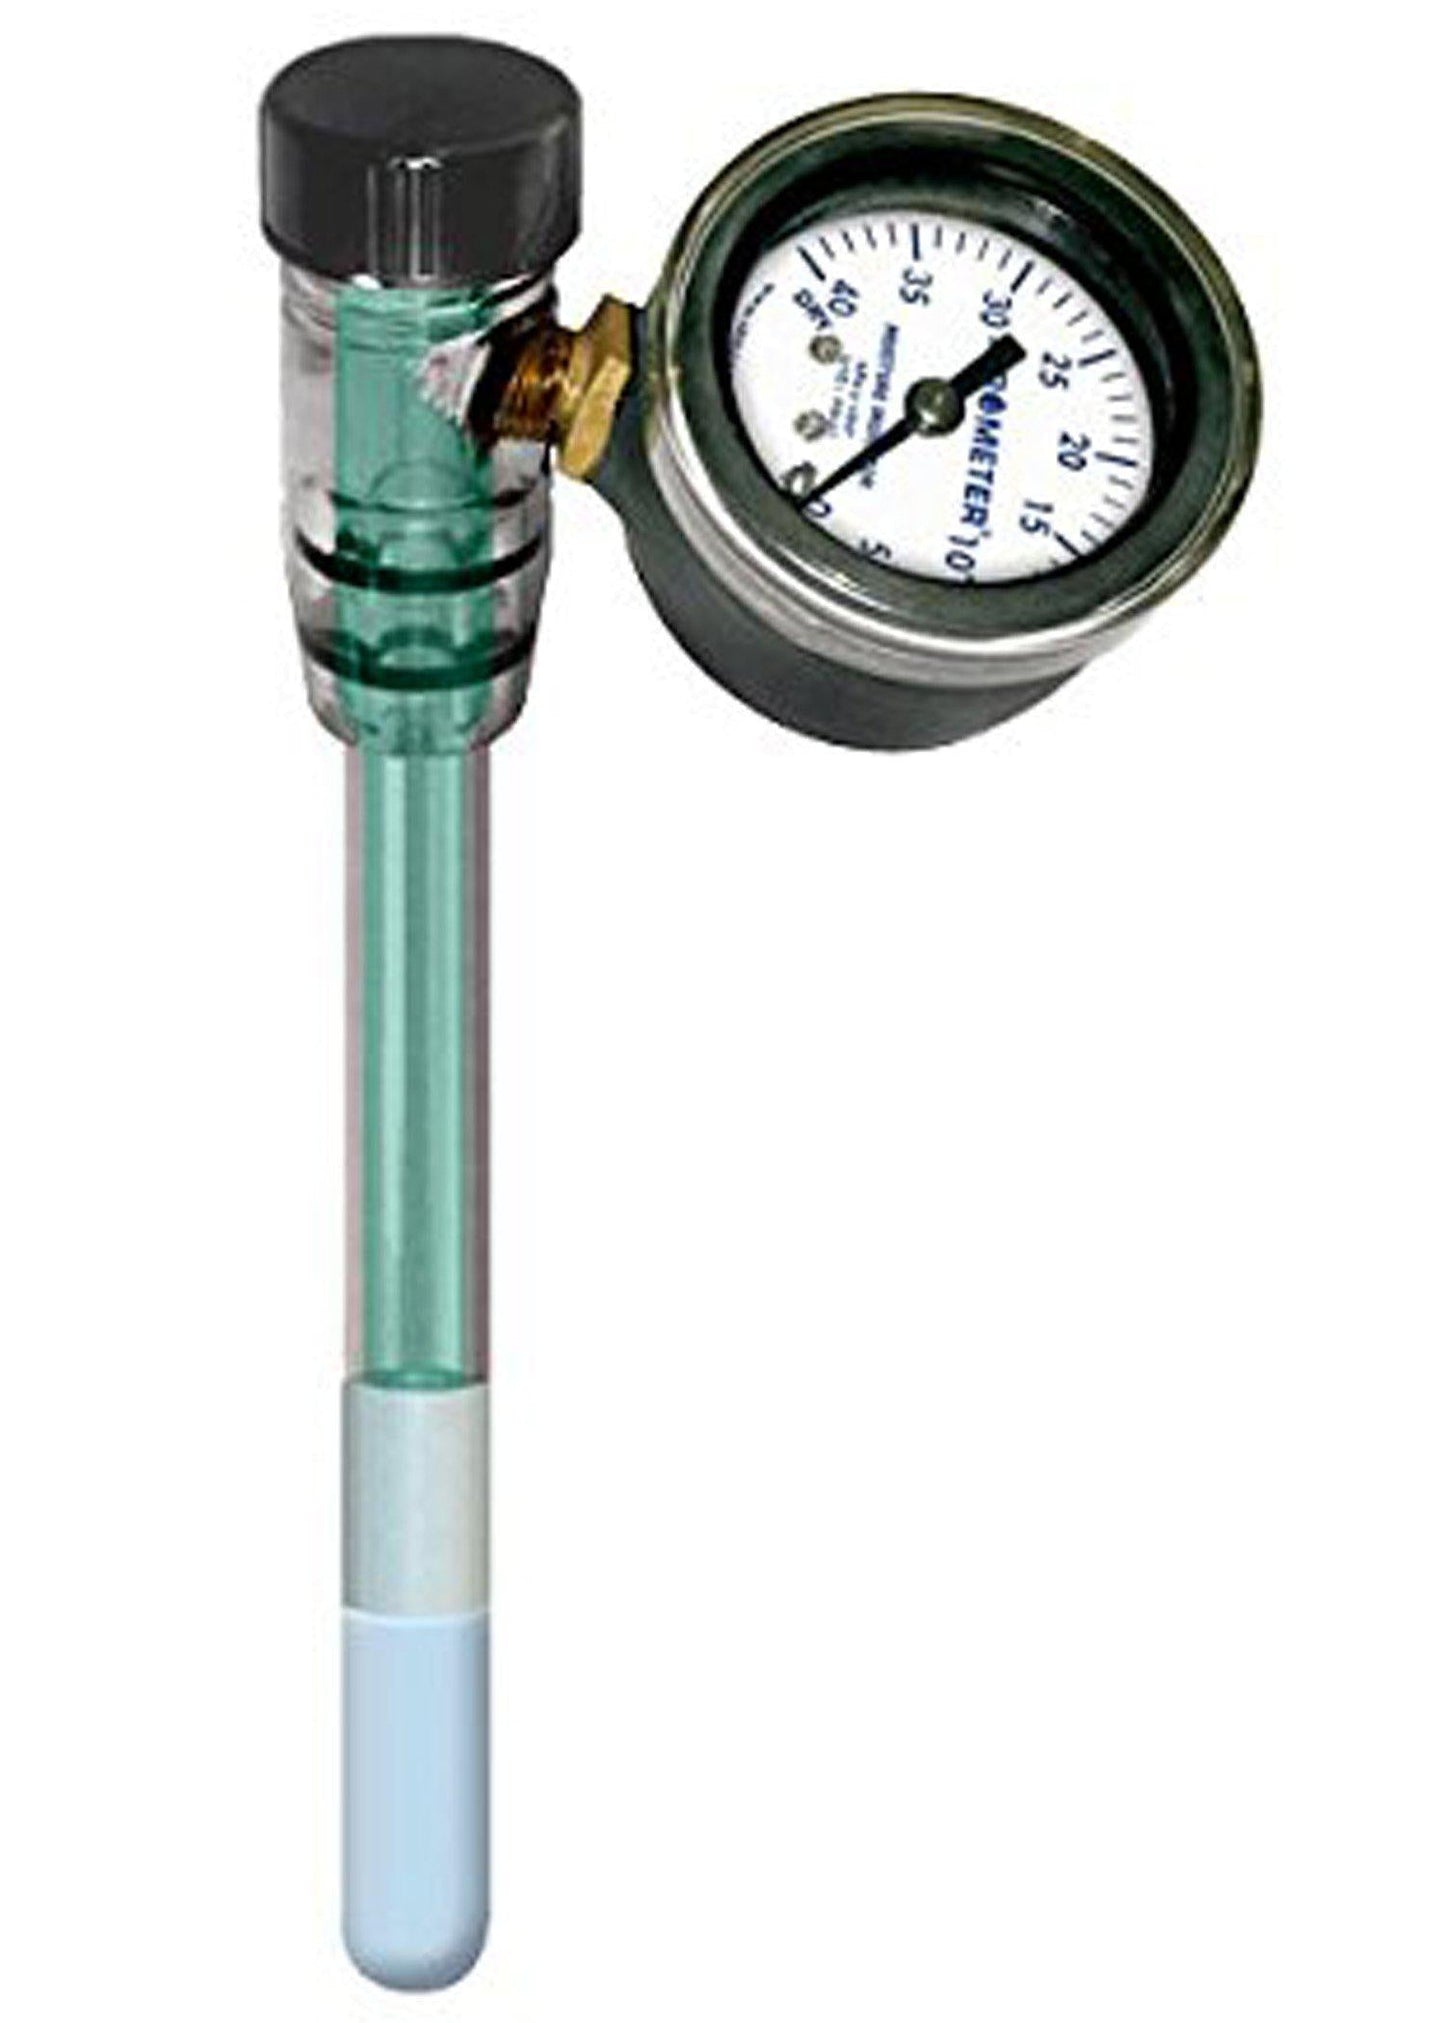 MLT Irrometer Tensiometer - Moisture Meter